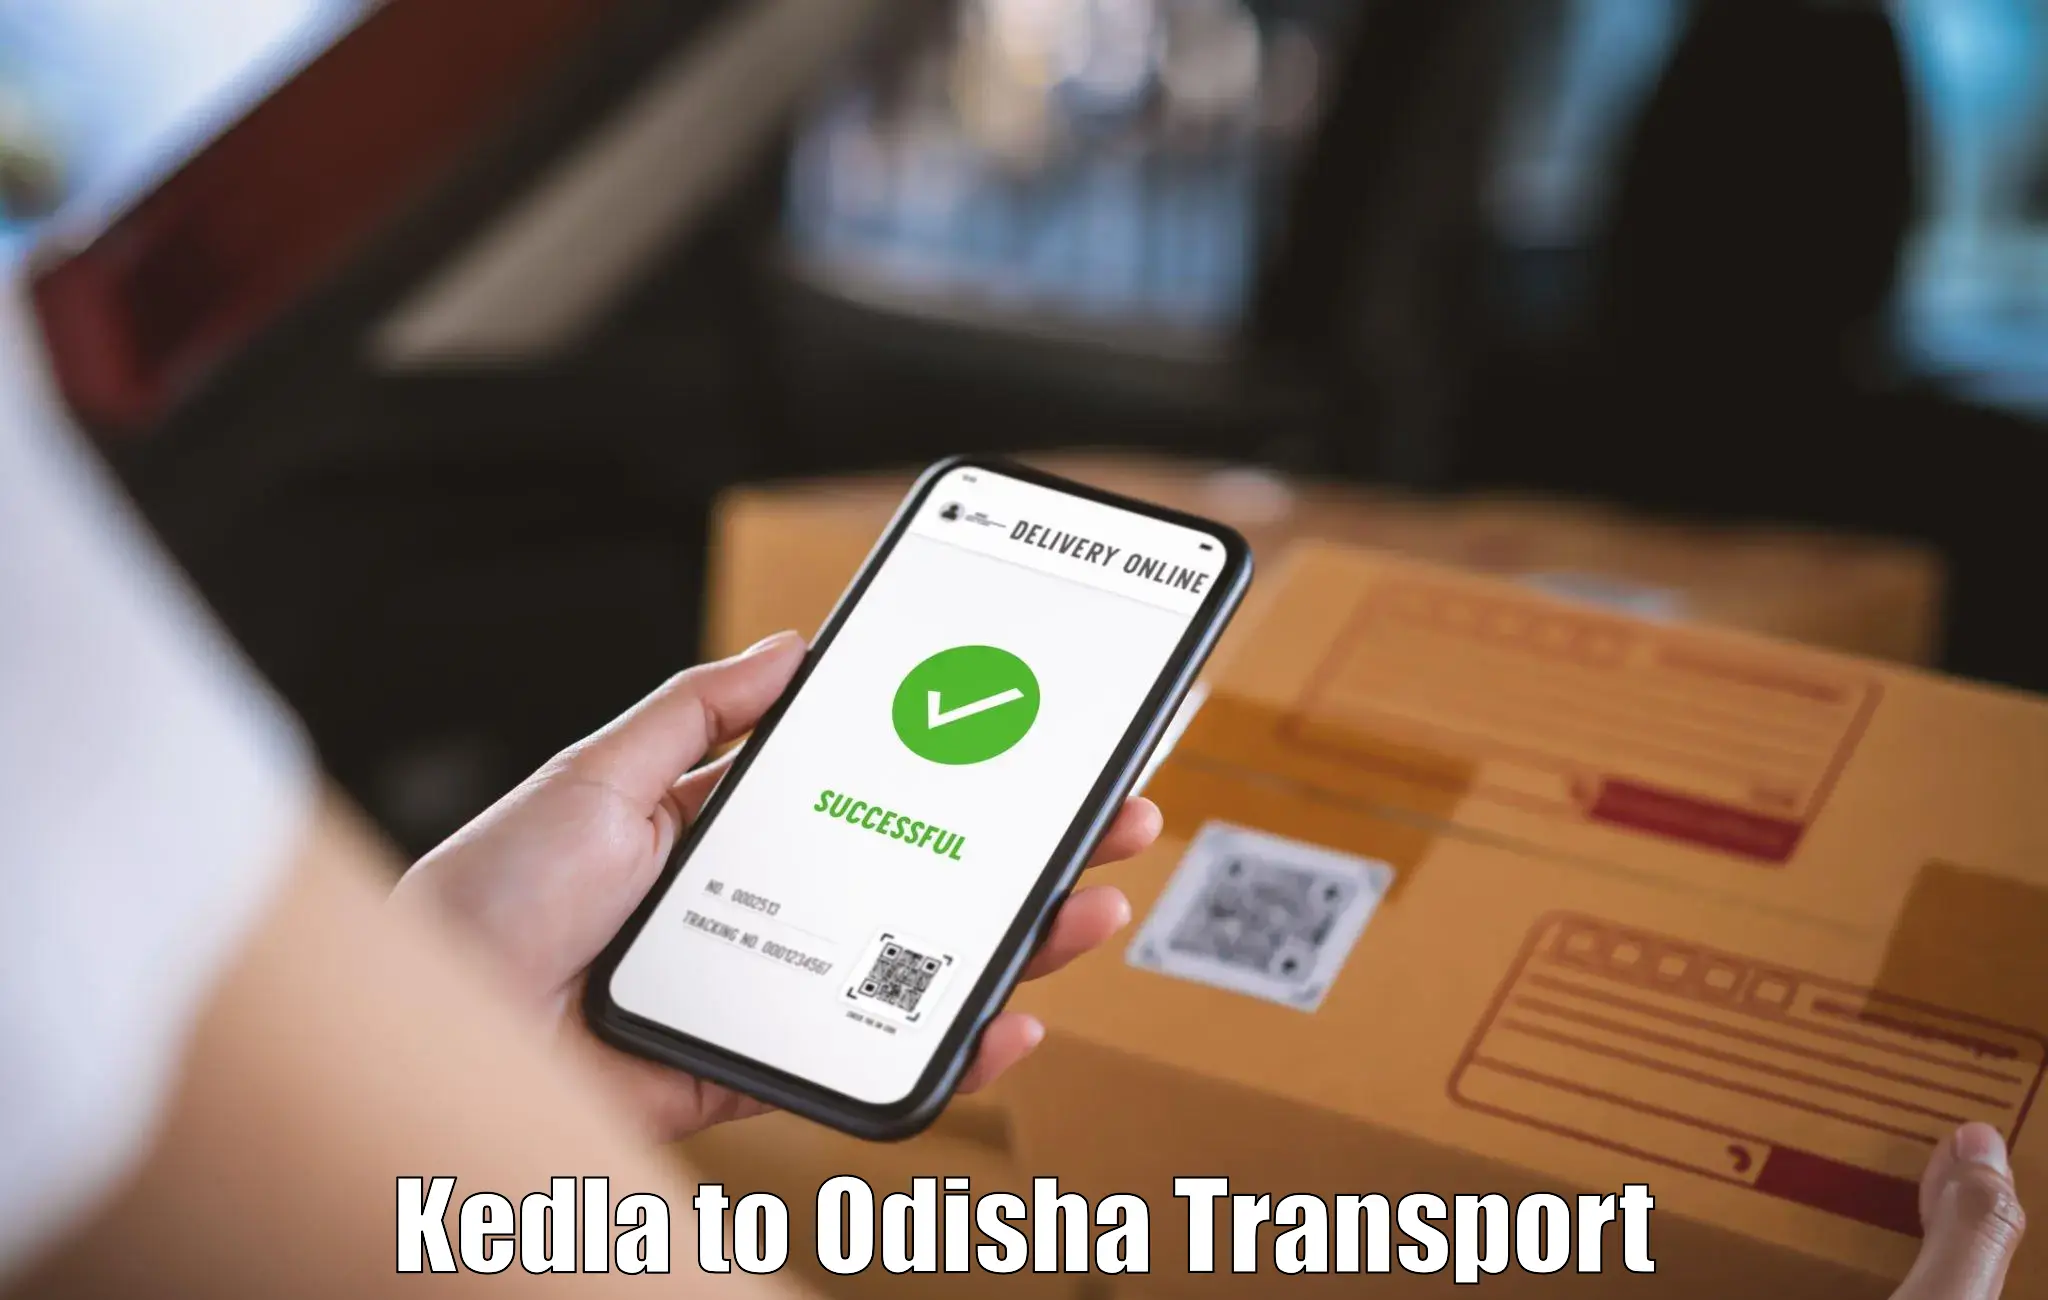 Commercial transport service Kedla to Melchhamunda